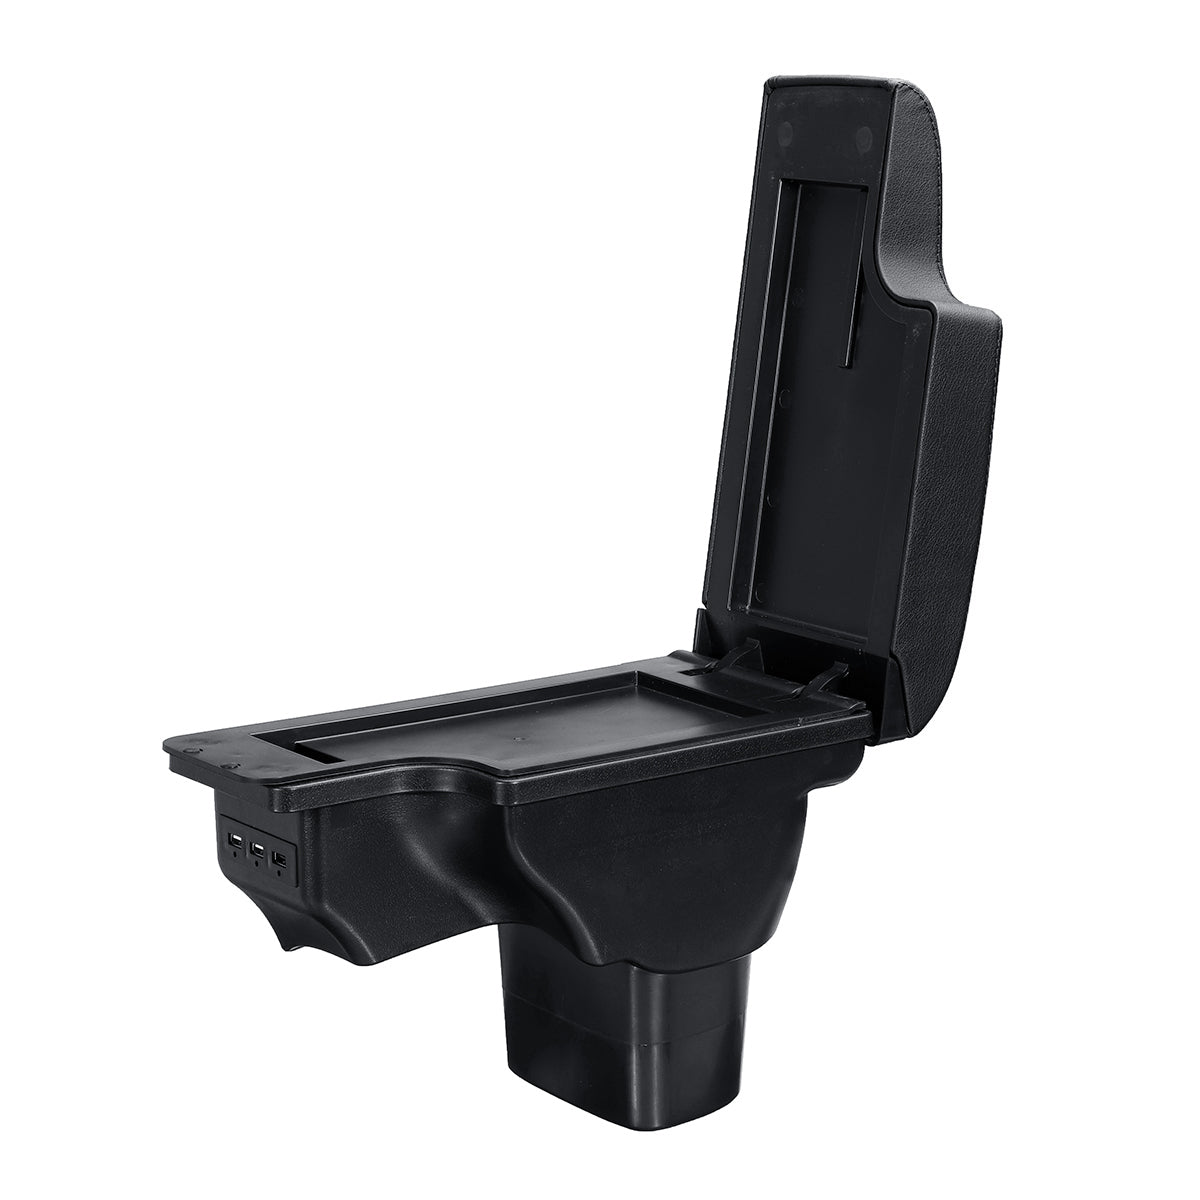 Auto Car Central Armrest Console Storage Box Handrails For Nissan Juke 2010-2015 - Auto GoShop